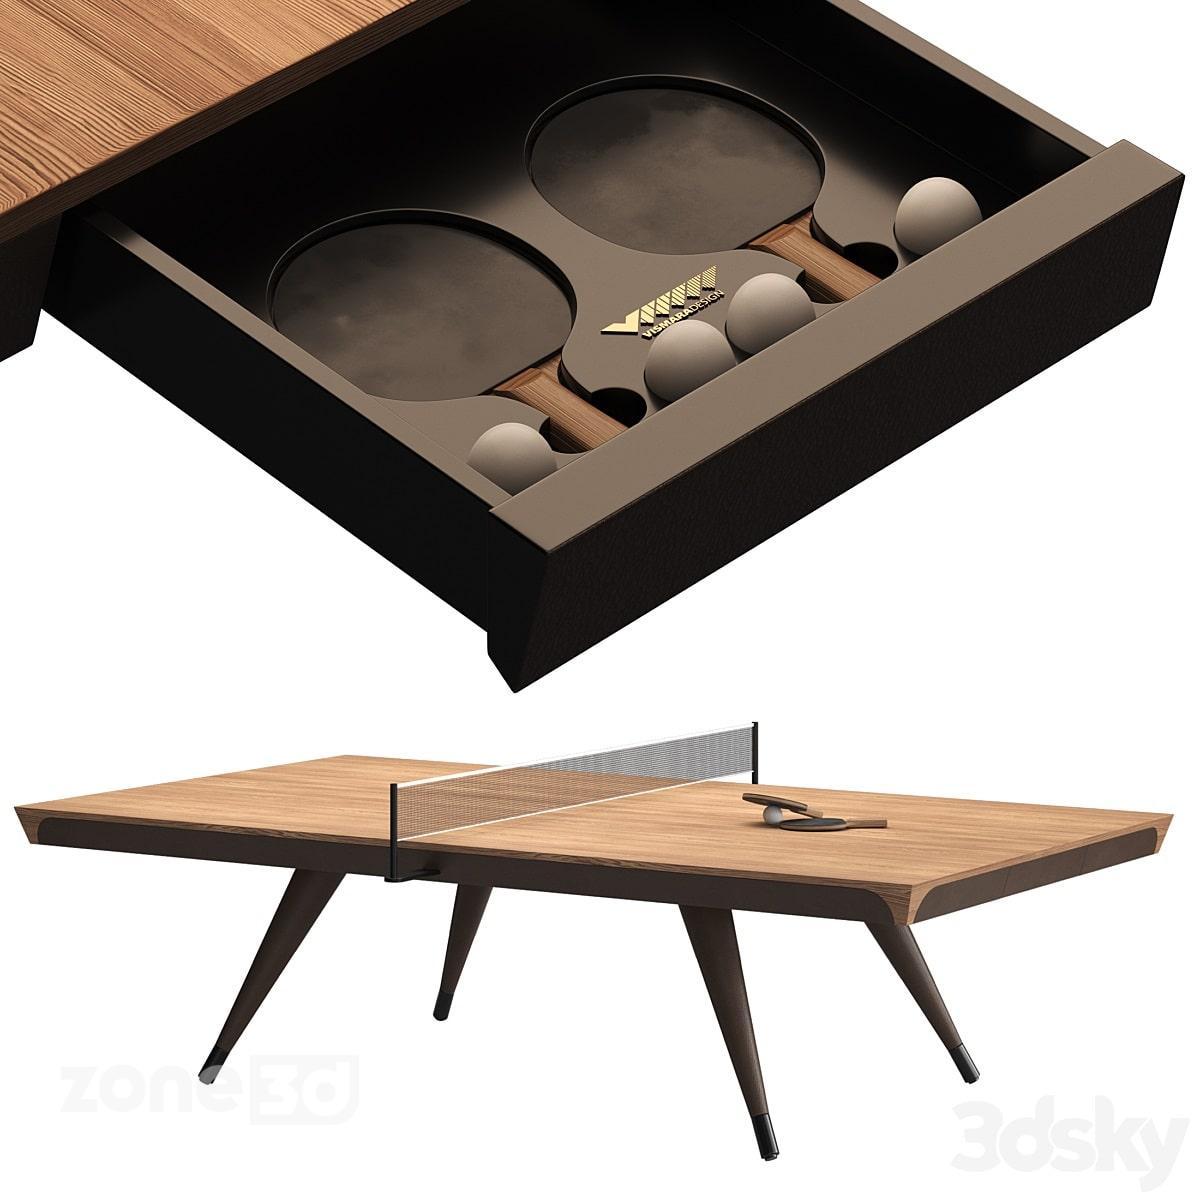 آبجکت میز پینگ پونگ مدرن چوبی با کشو به همراه توپ و راکت مدل BLADE